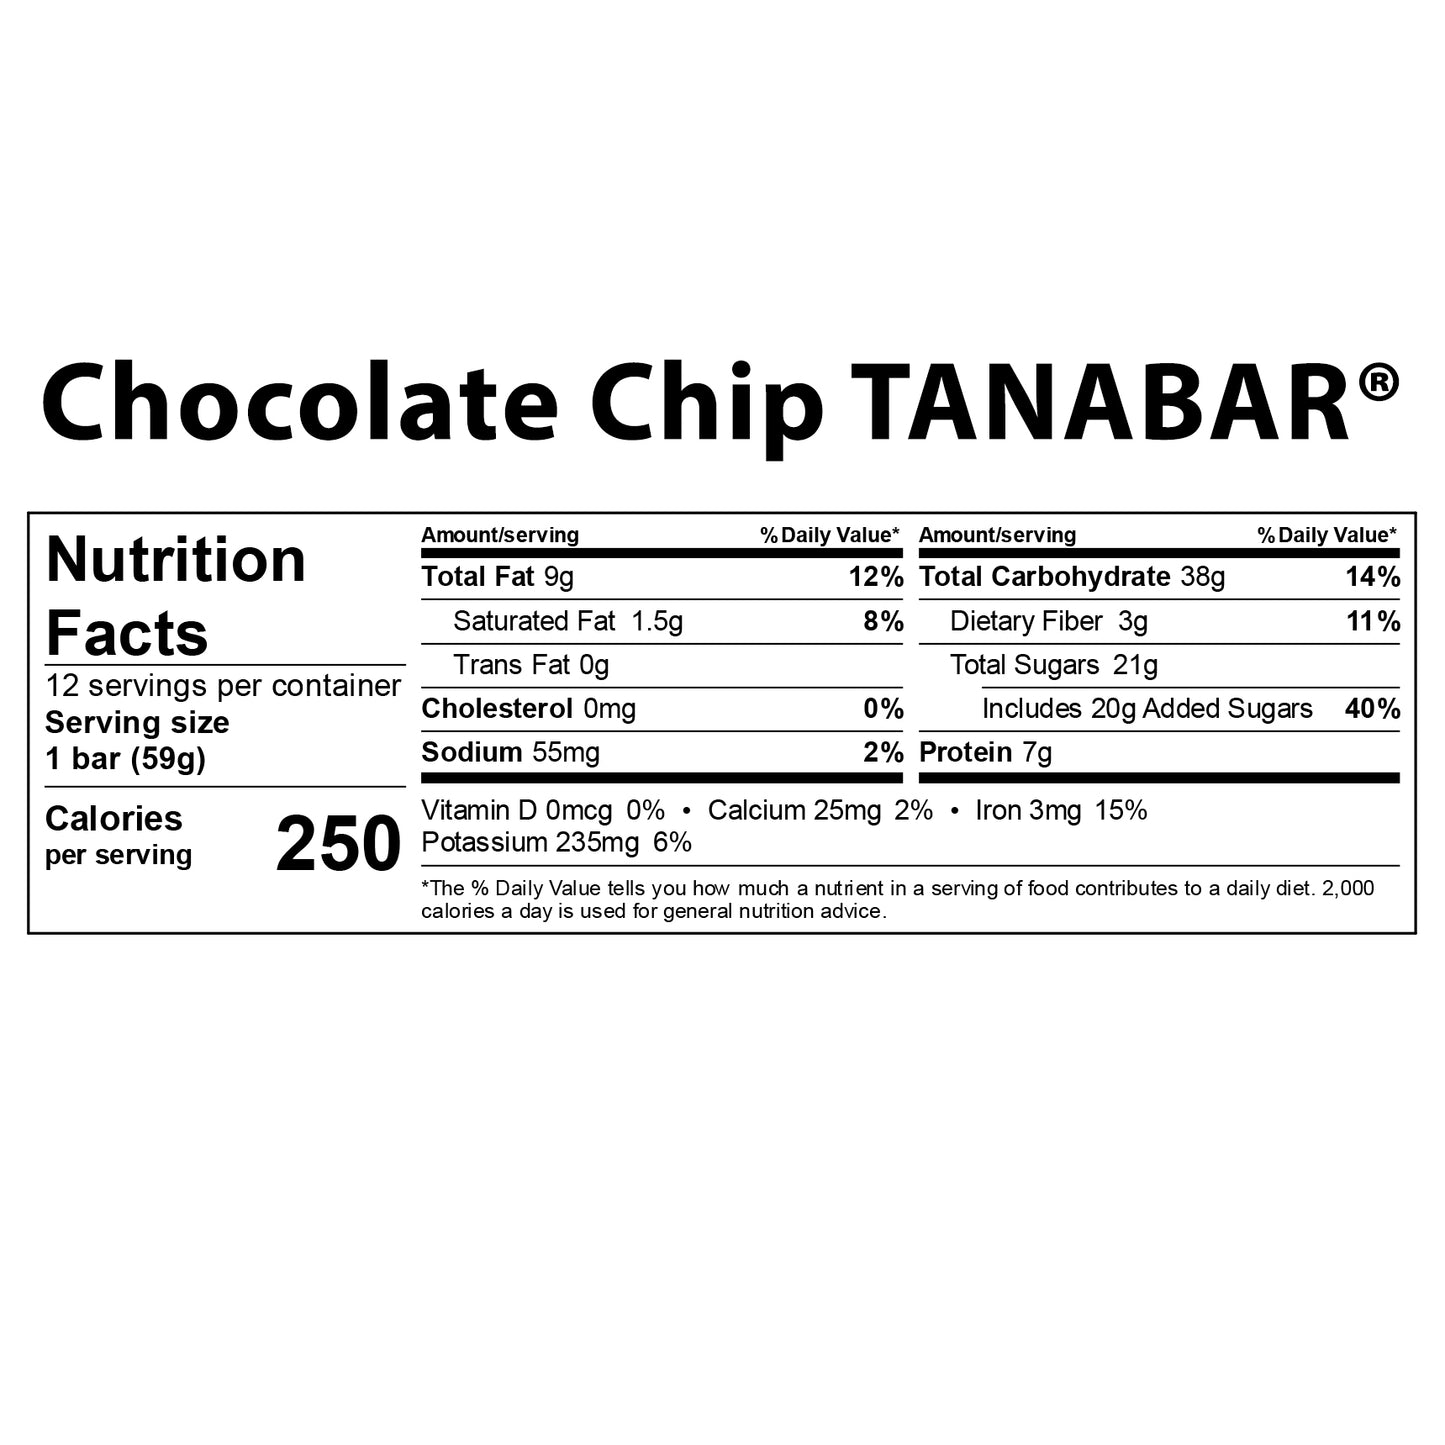 
                  
                    TANABAR® Granola Bars - Box of 12
                  
                